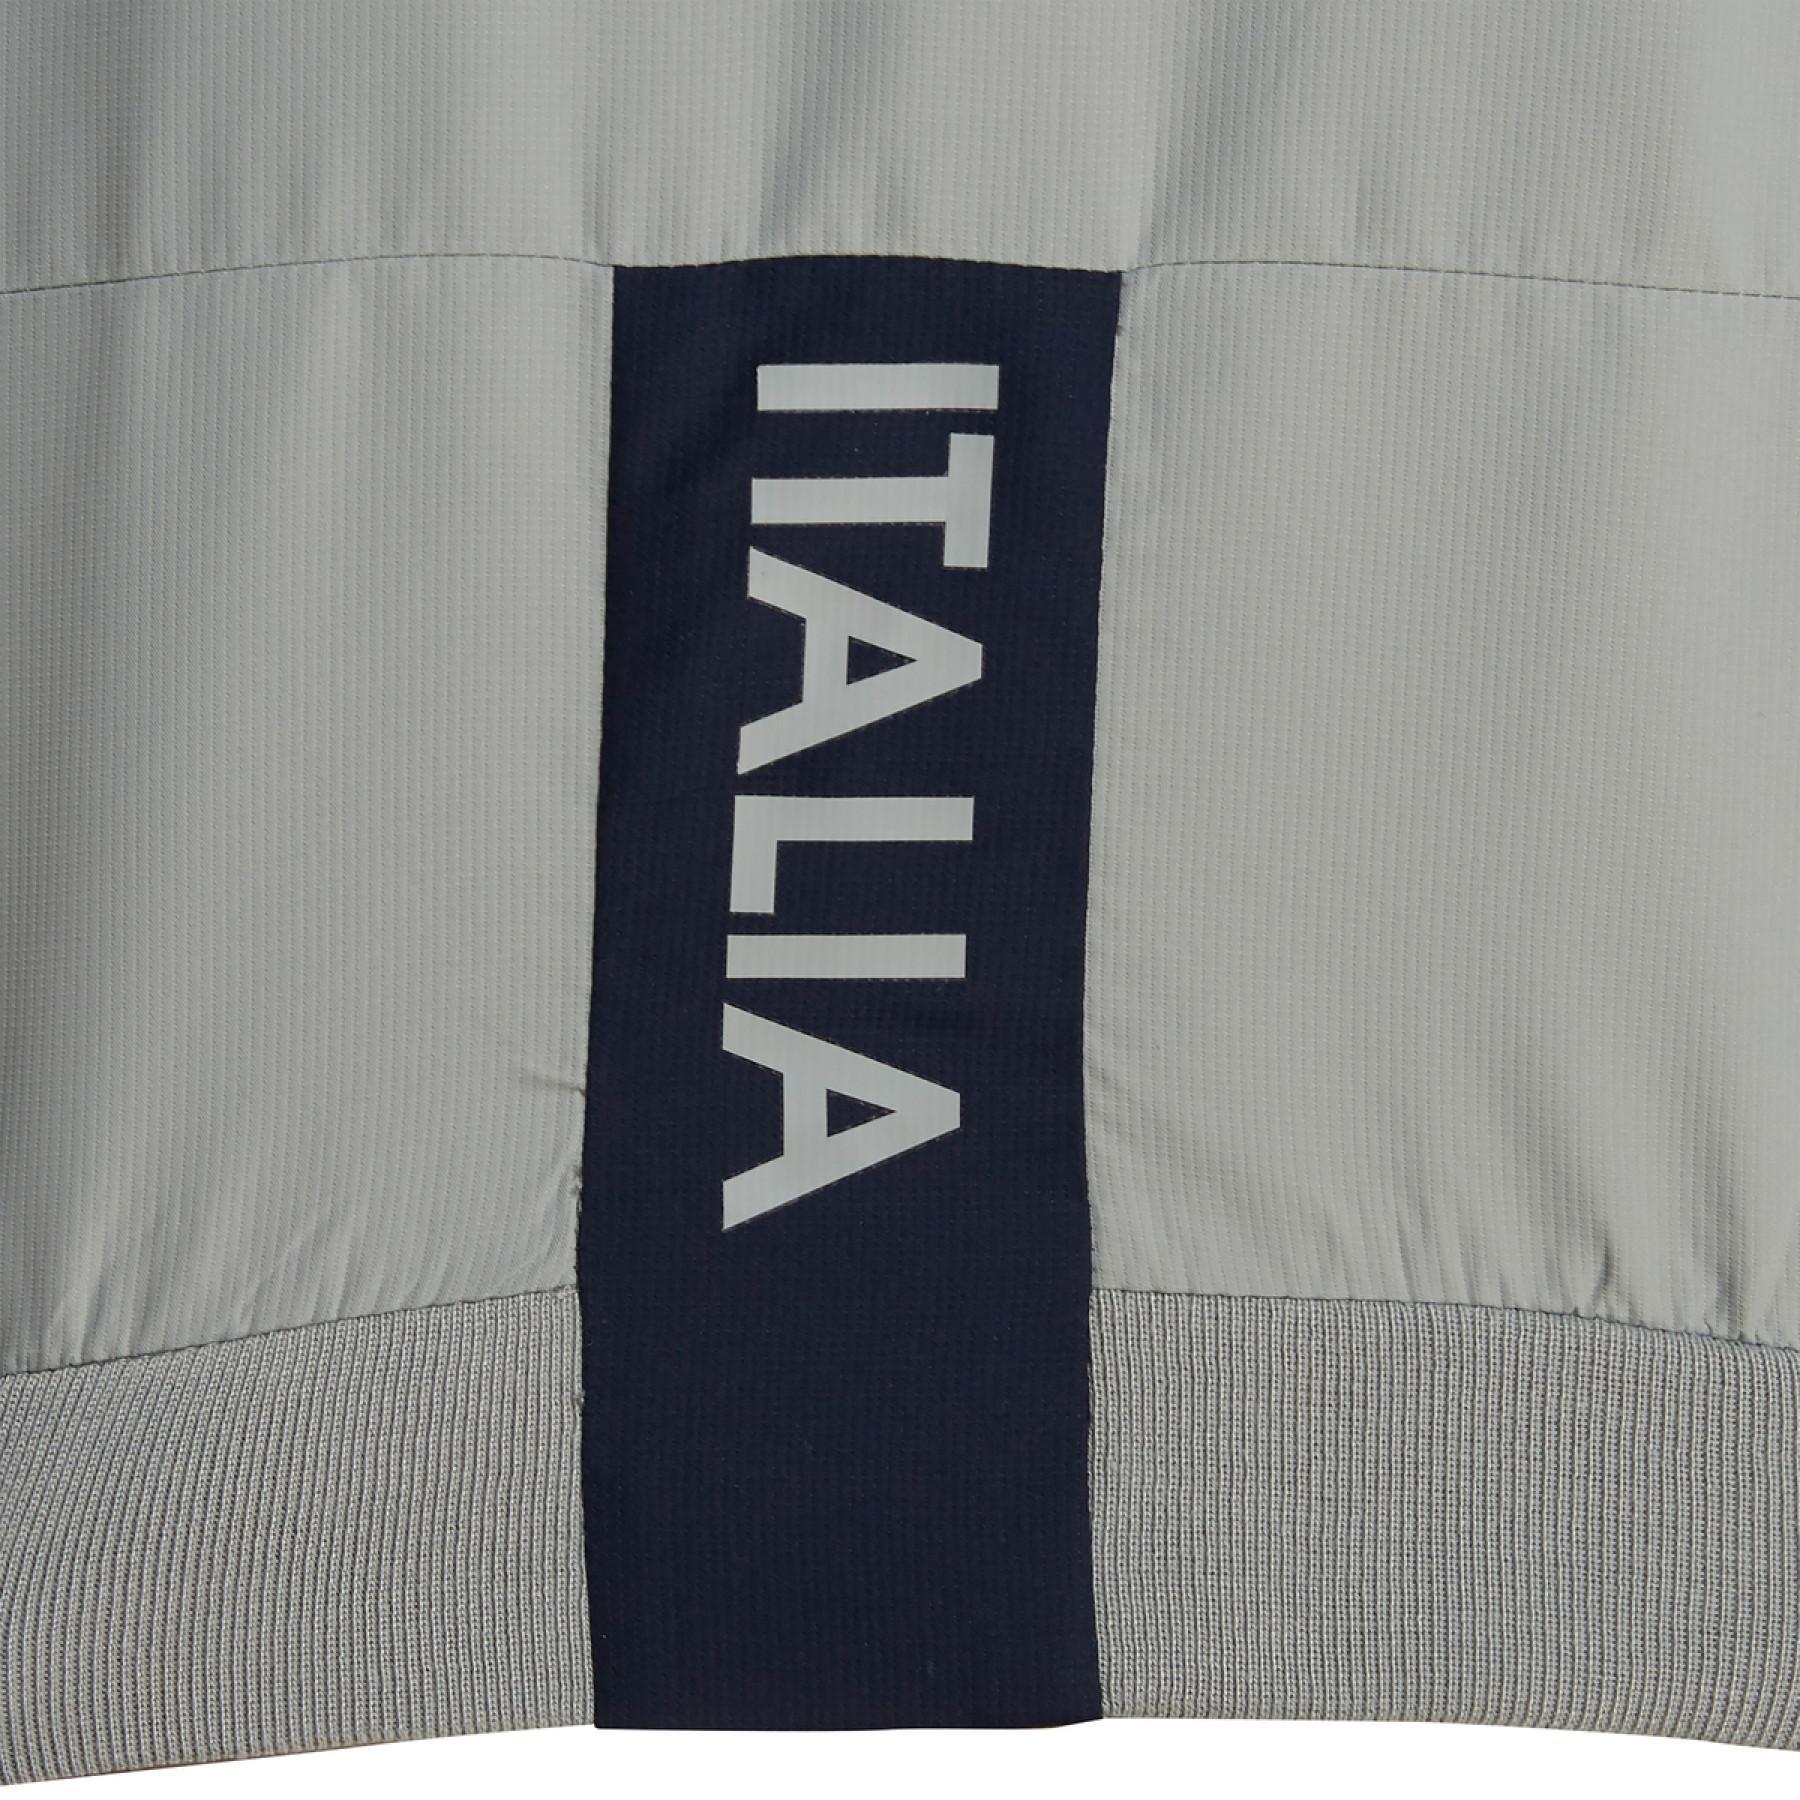 Children's jacket Italie rugby intégrale 2019